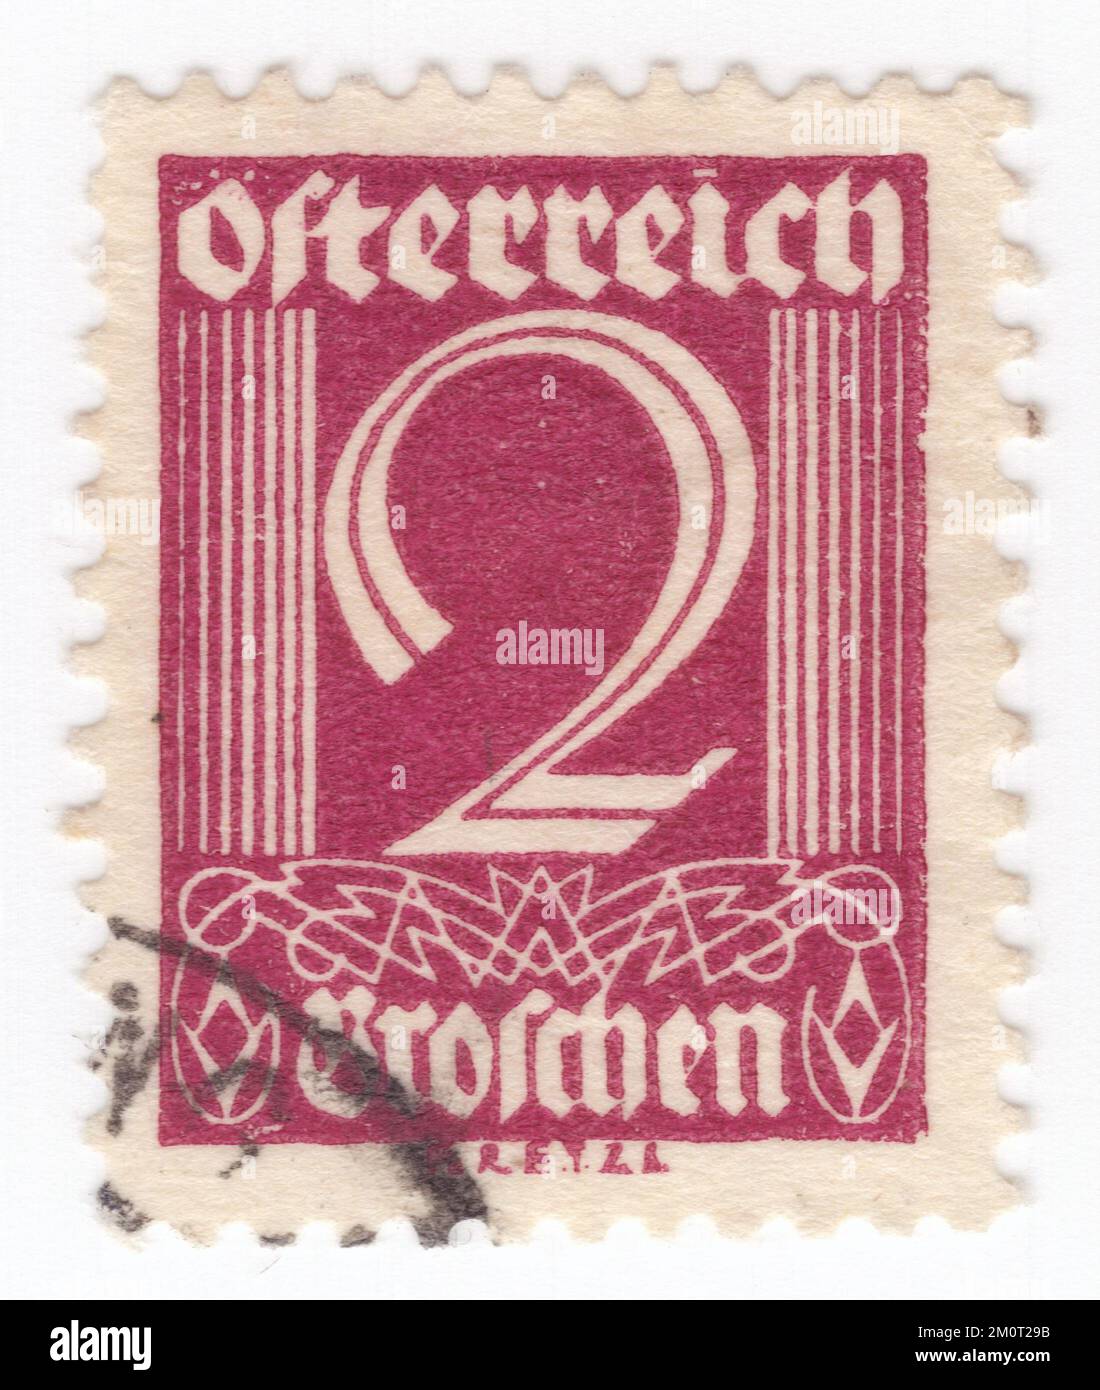 AUTRICHE - 1925: Original annulé timbre-poste autrichien de 2 gros-chen en bordeaux avec chiffre Banque D'Images